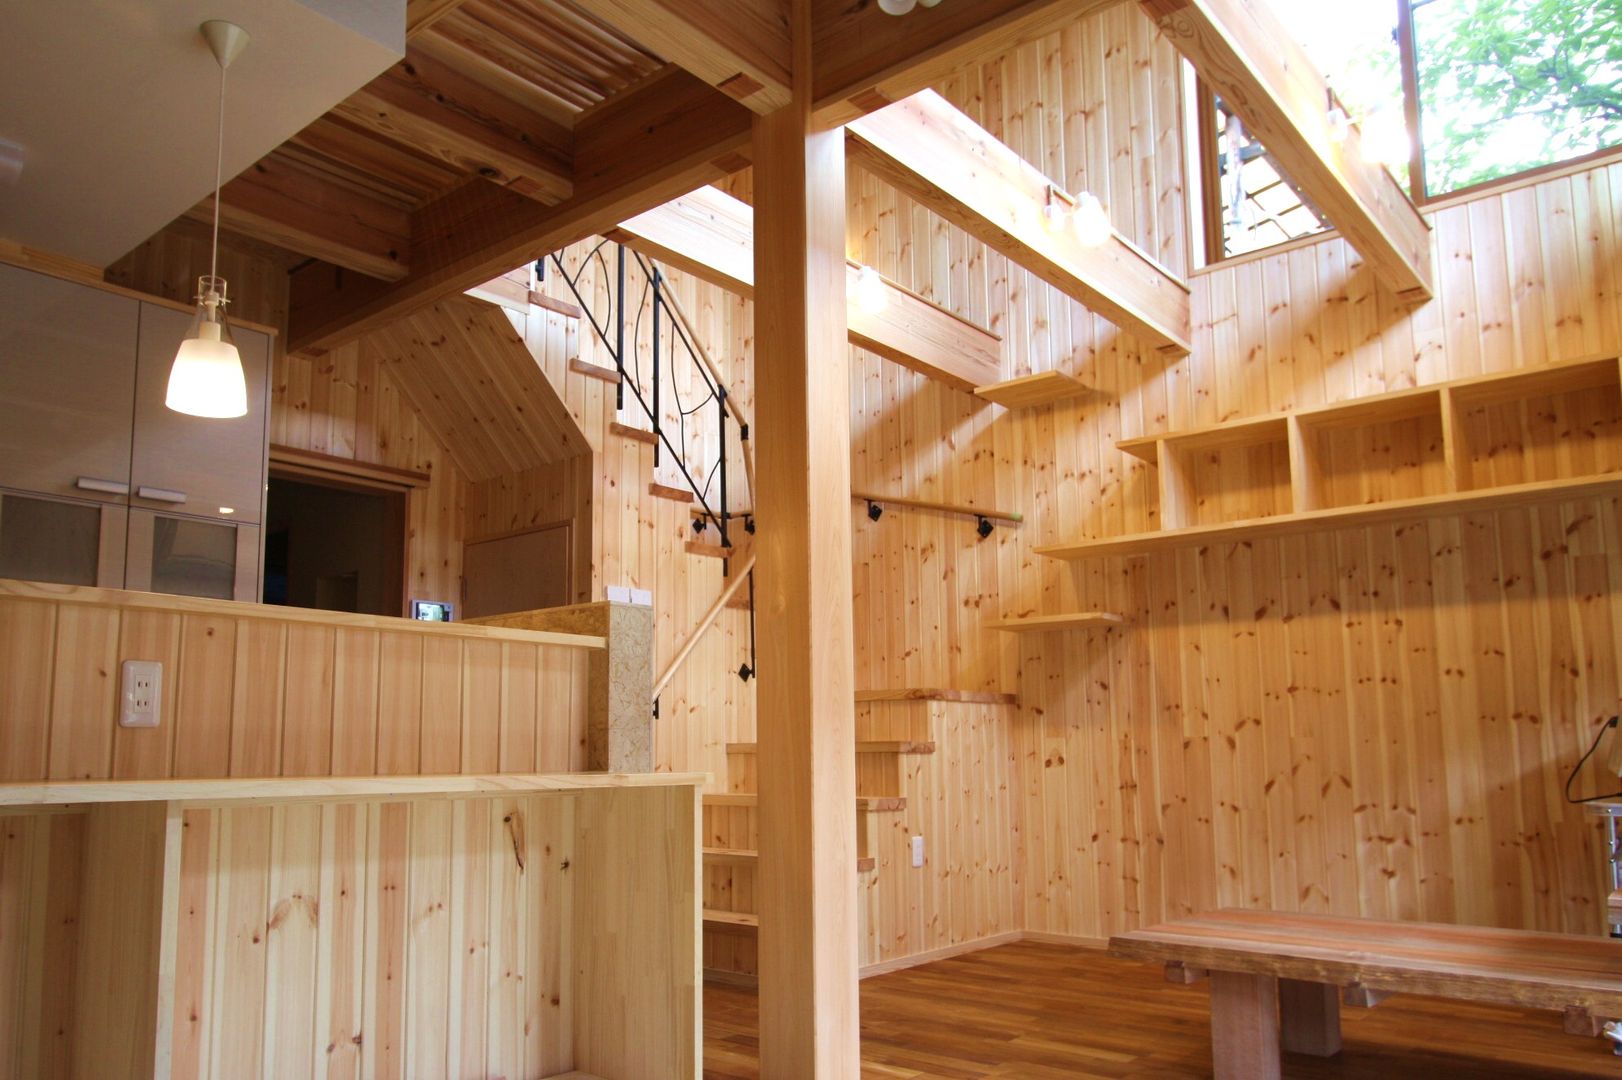 ねこ楽舎, 竹内村上ＡＴＥＬＩＥＲ 竹内村上ＡＴＥＬＩＥＲ Living room Wood Wood effect